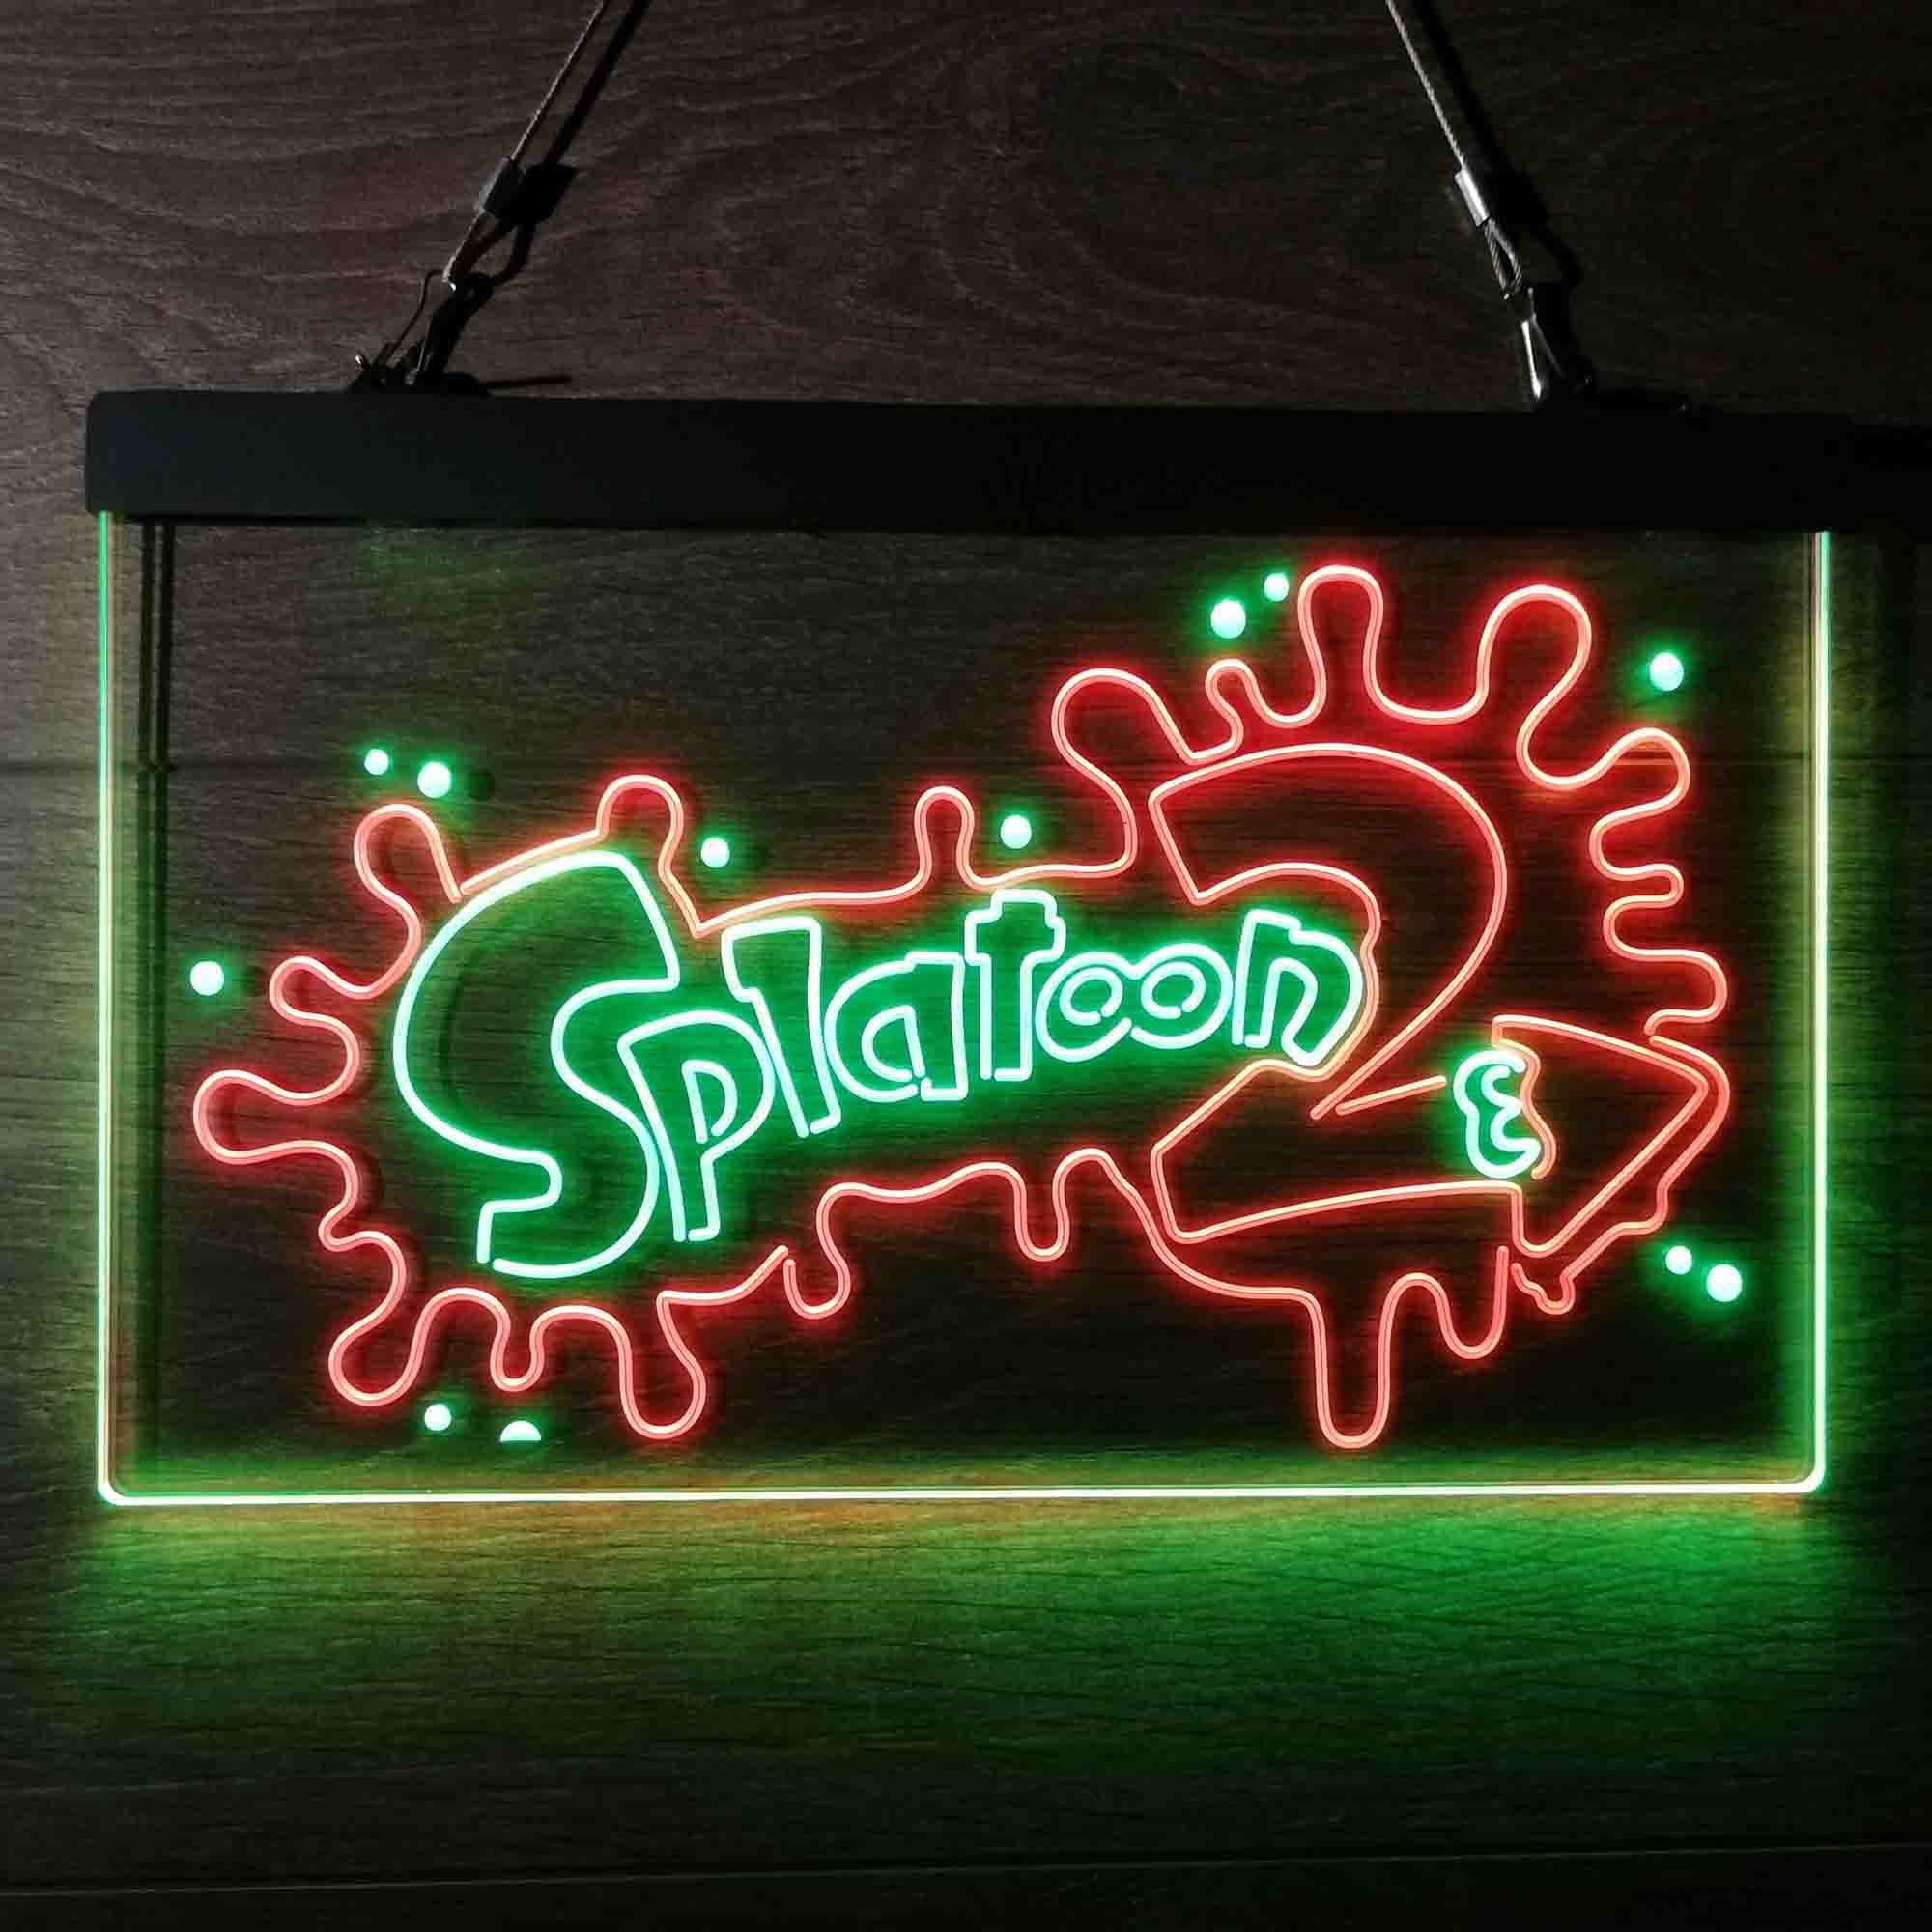 Splatoon 2 Game Room Neon Light LED Sign